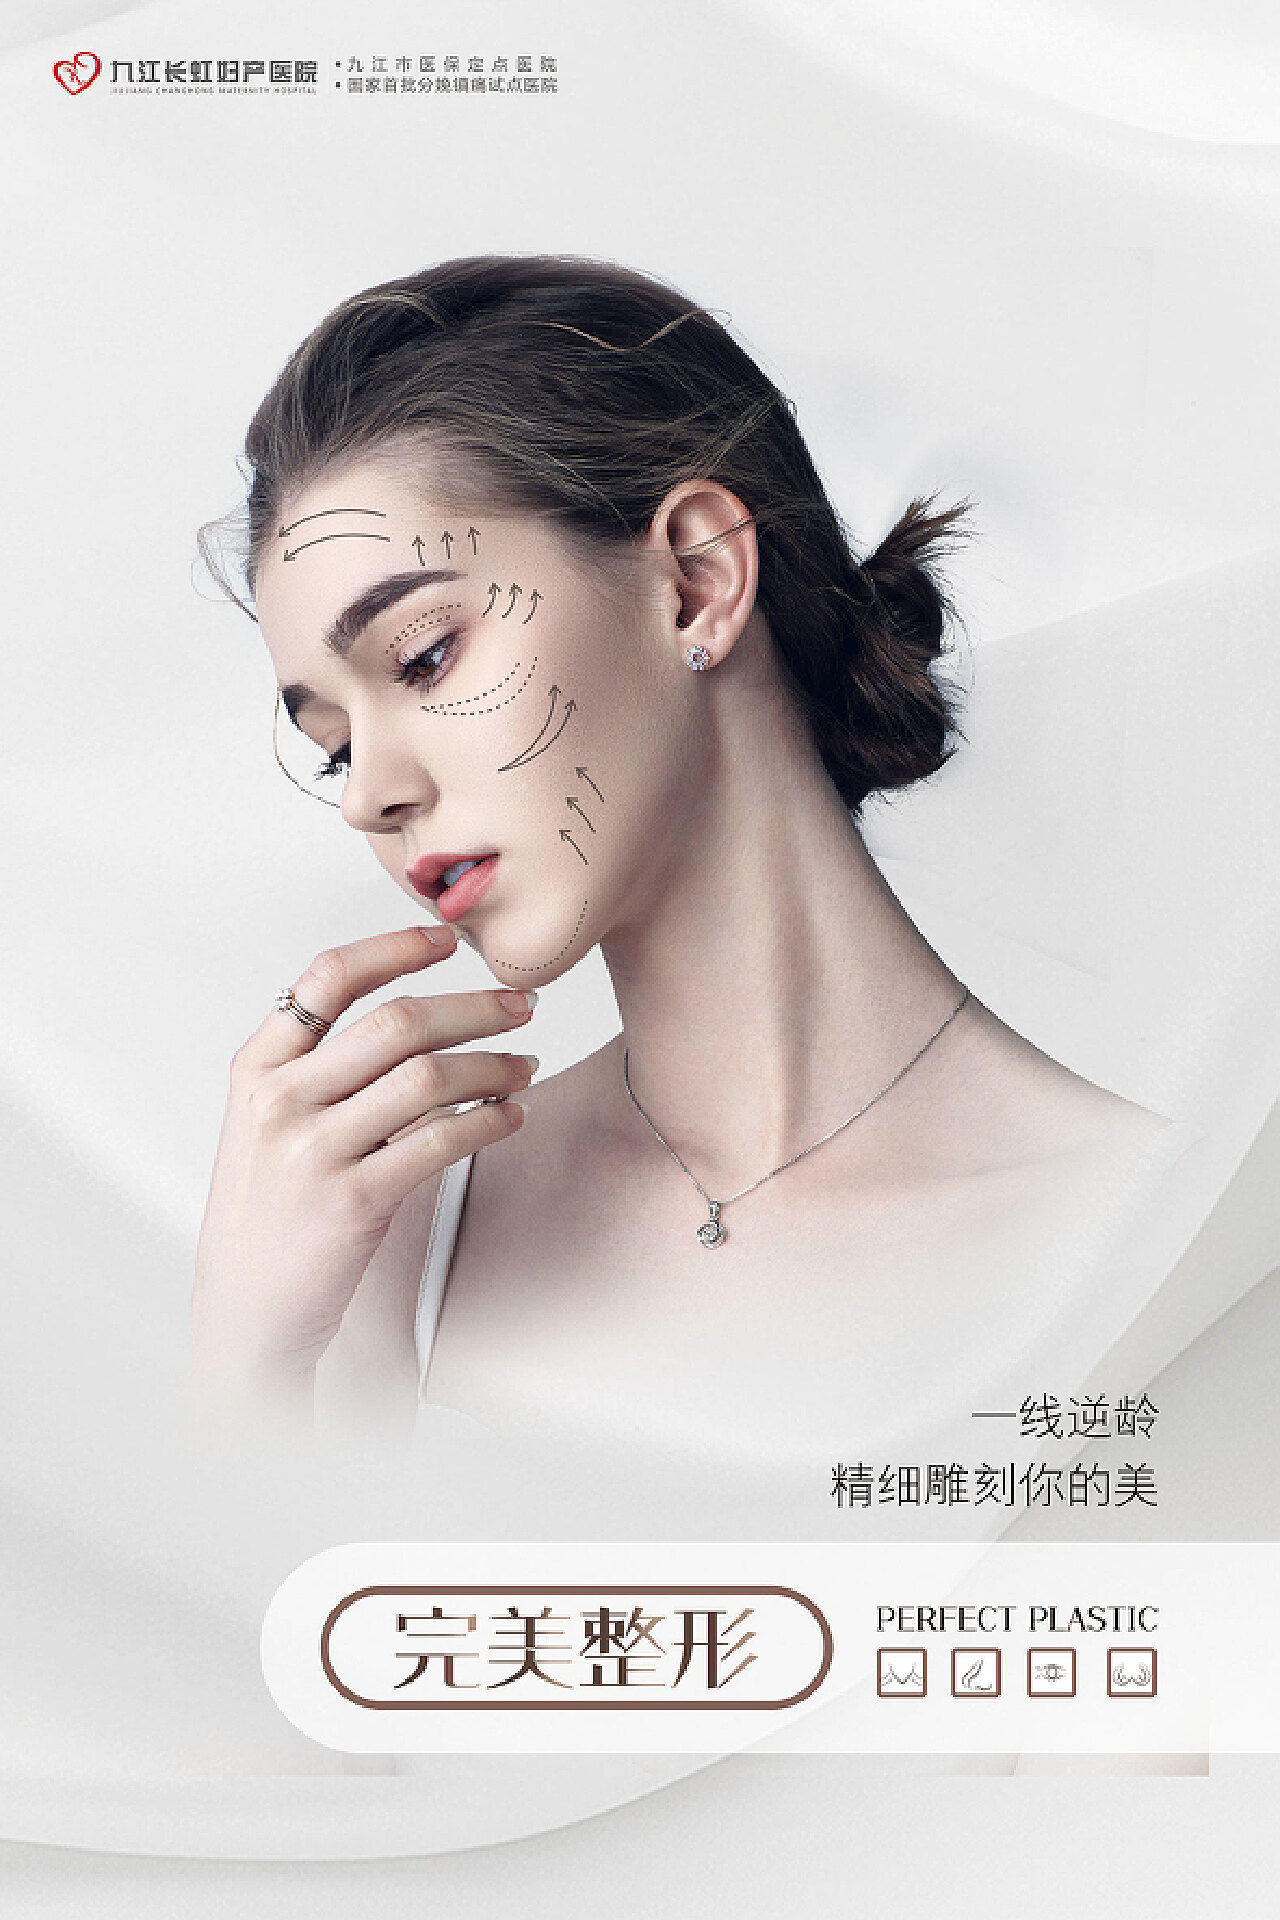 女人做整容手术美容面部抗衰图片下载 - 觅知网